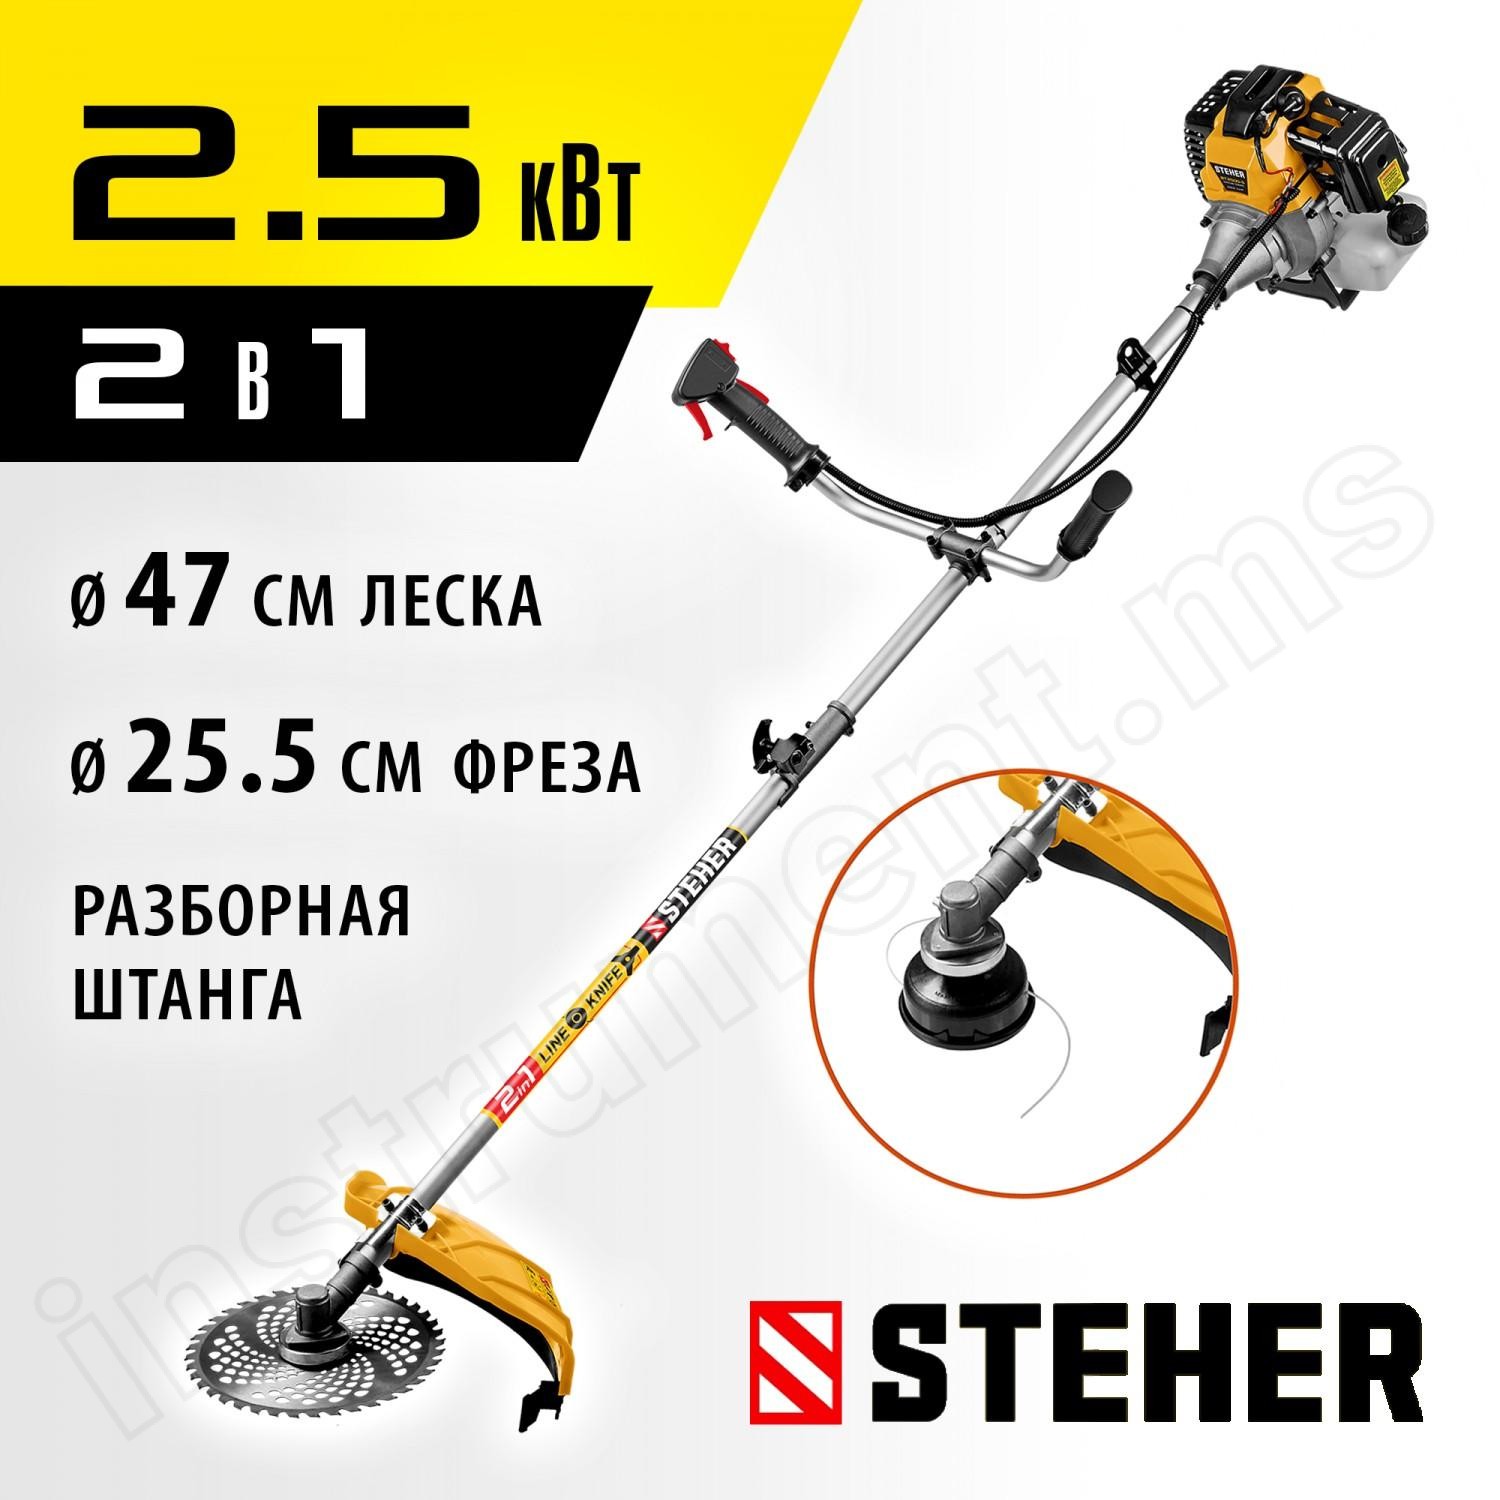 STEHER 2.5 кВт / 3.3 л.с., 52 см3, разборная штанга, триммер бензиновый (бензокоса) BT-2500-S - фото 1